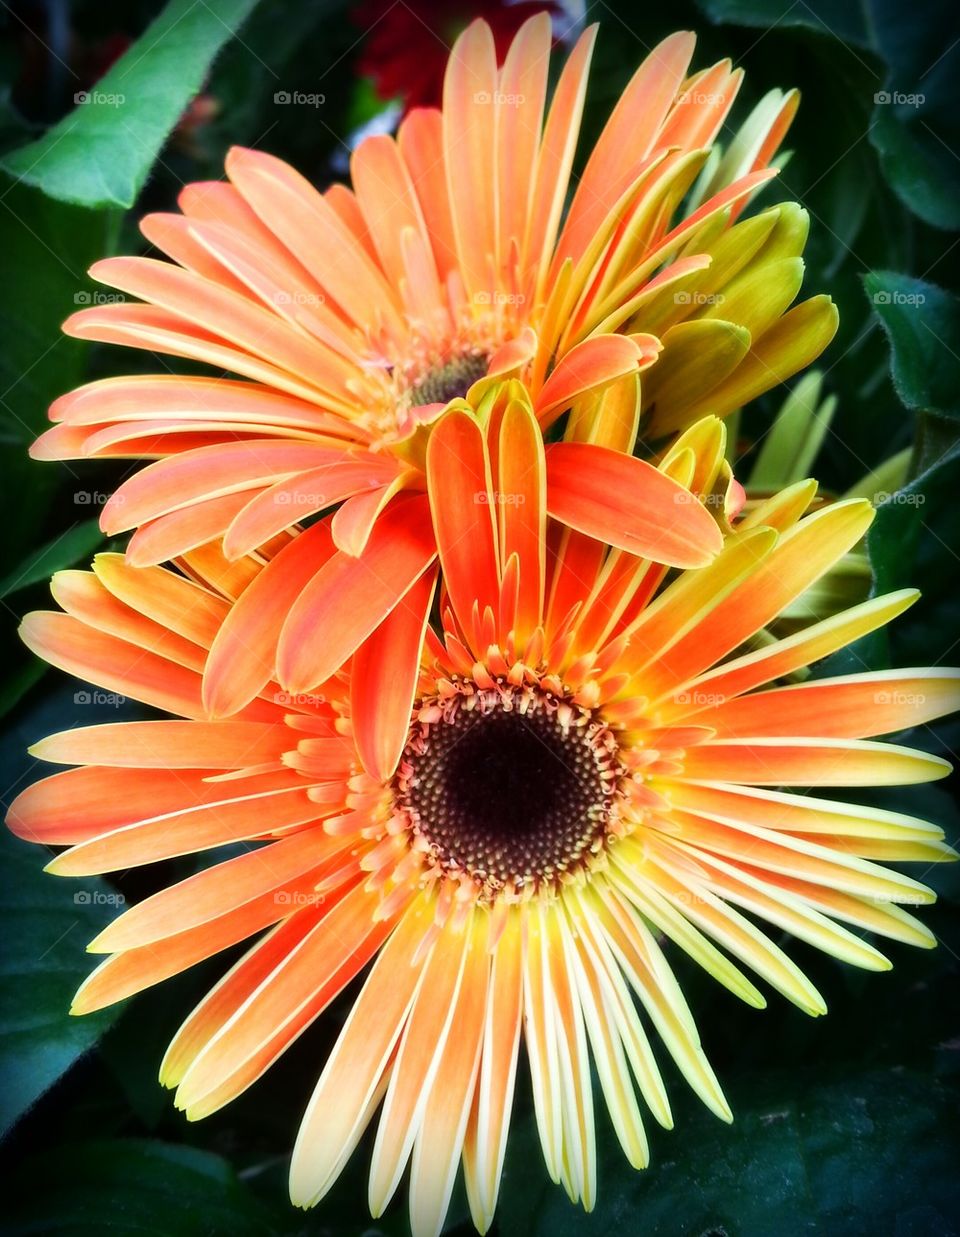 Orange flowers blooming in bloom